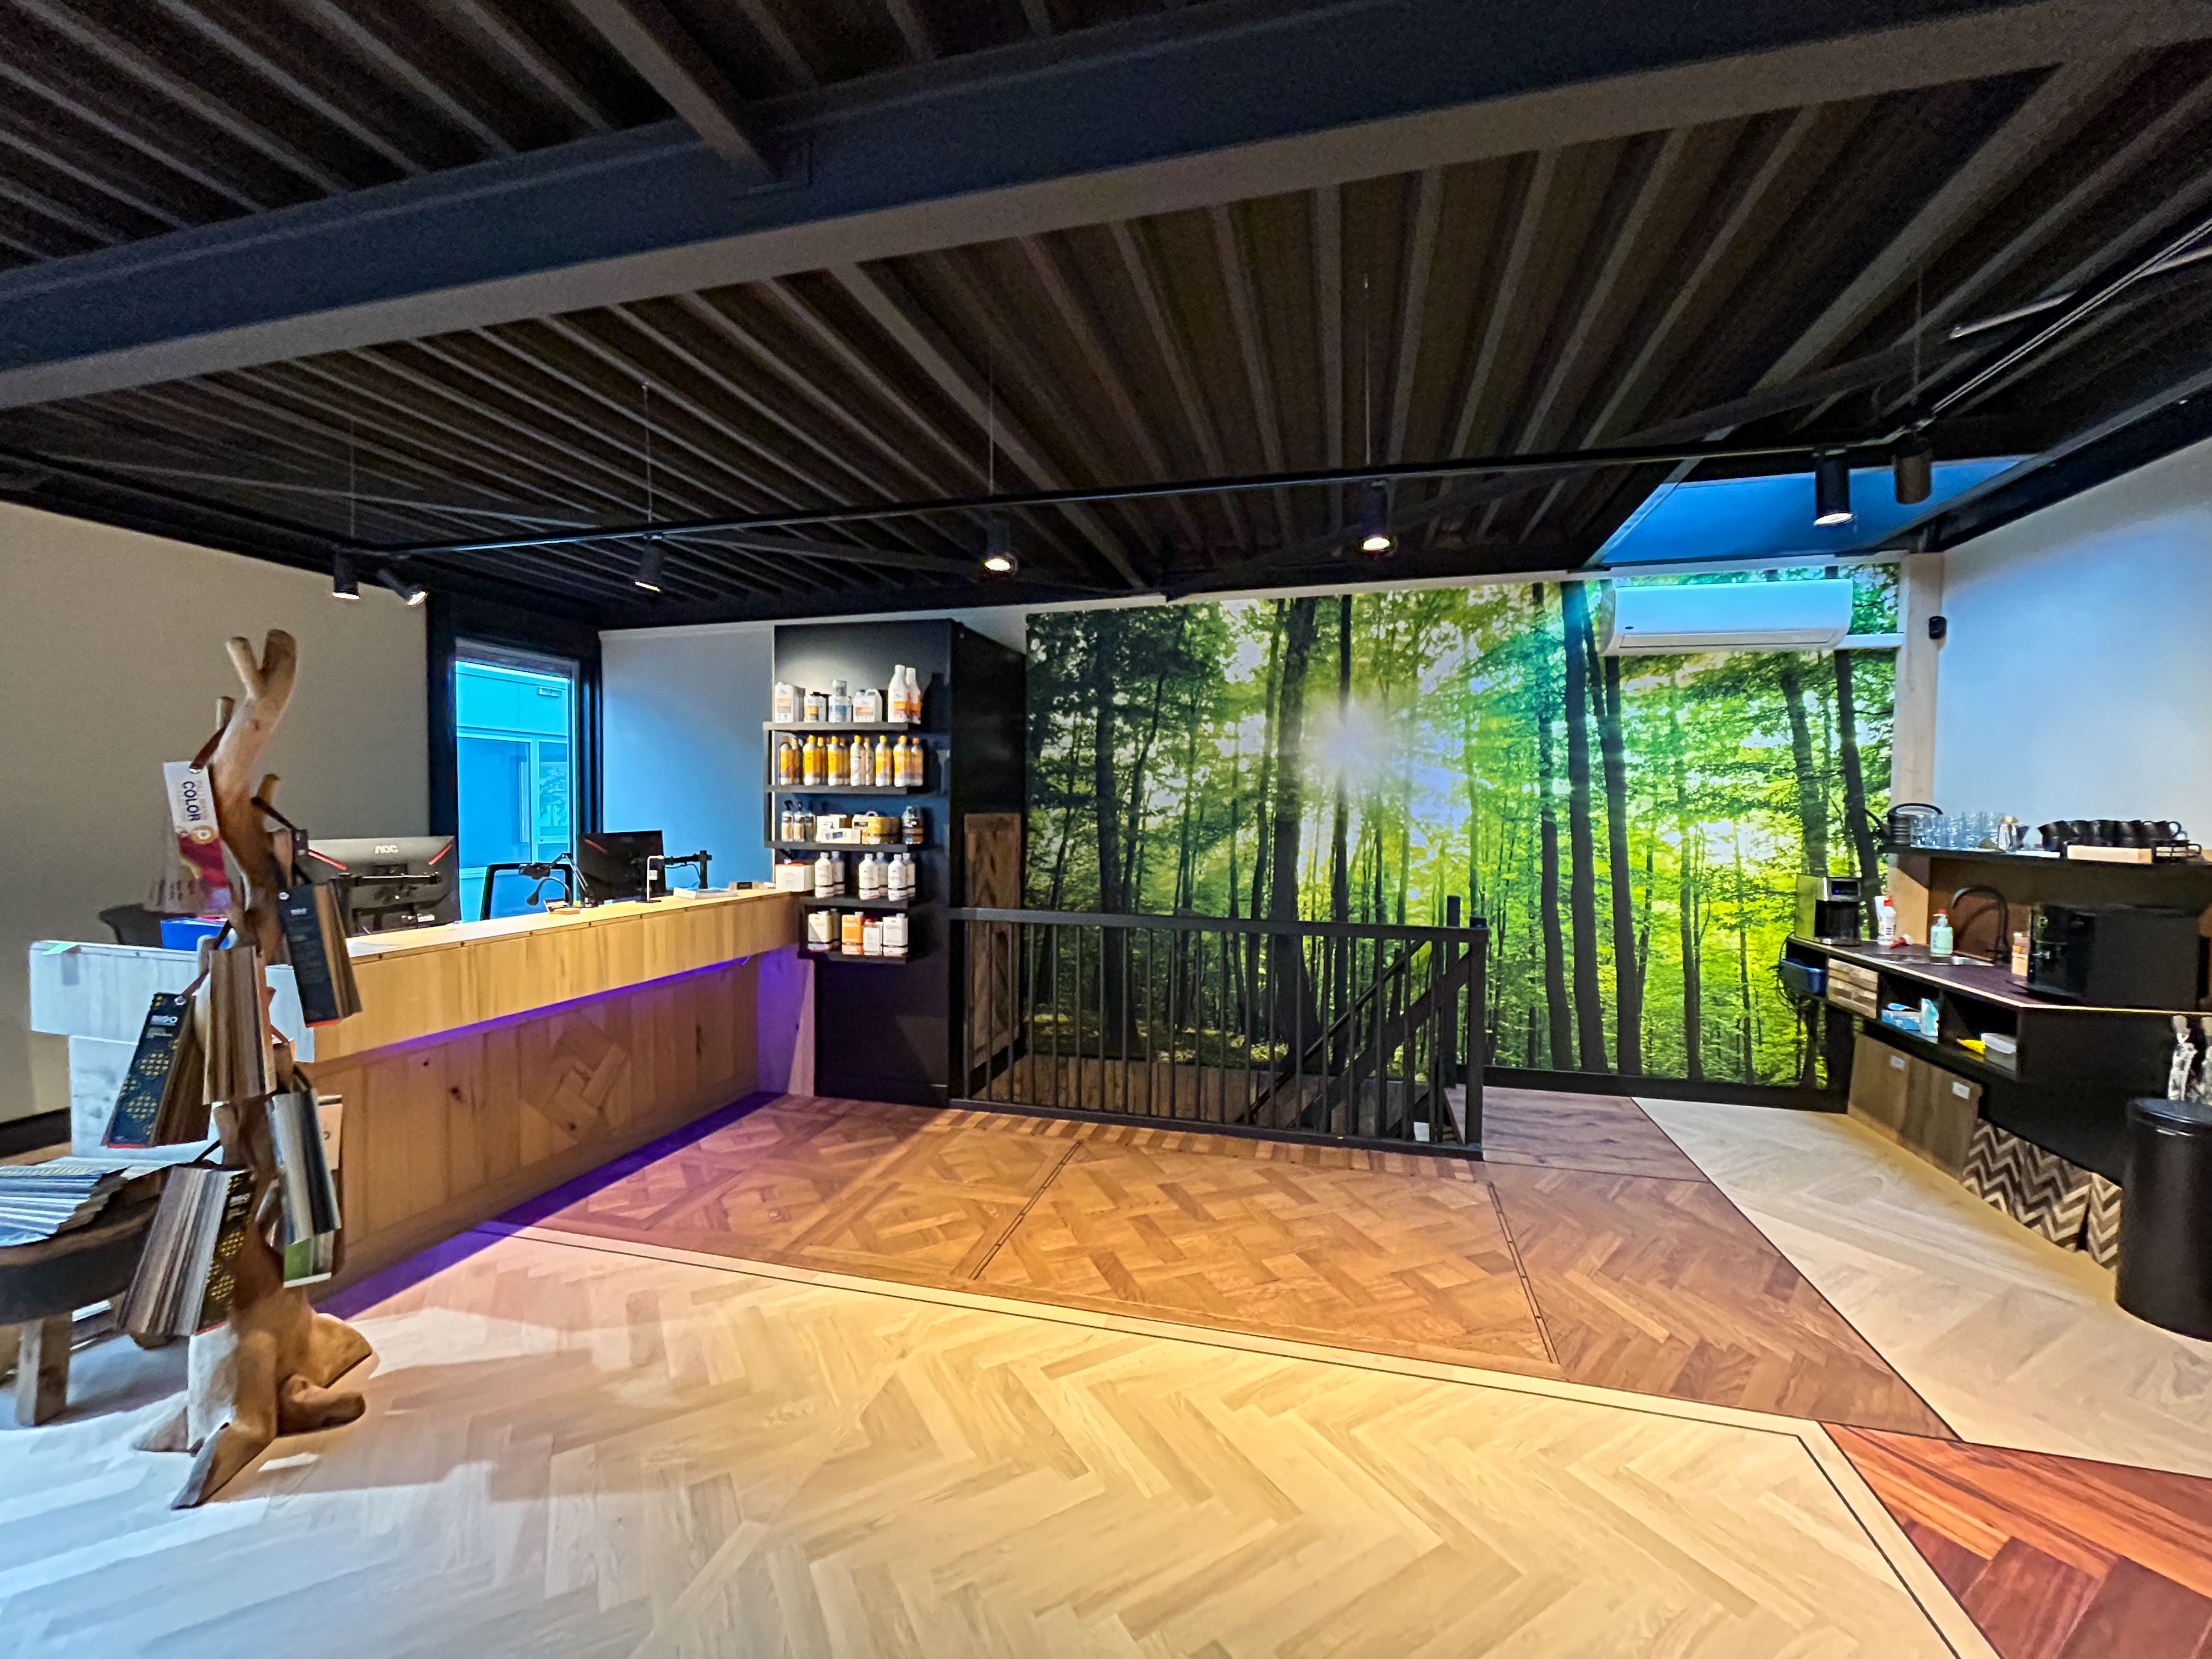 Vloer & Design opent nieuwe showroom